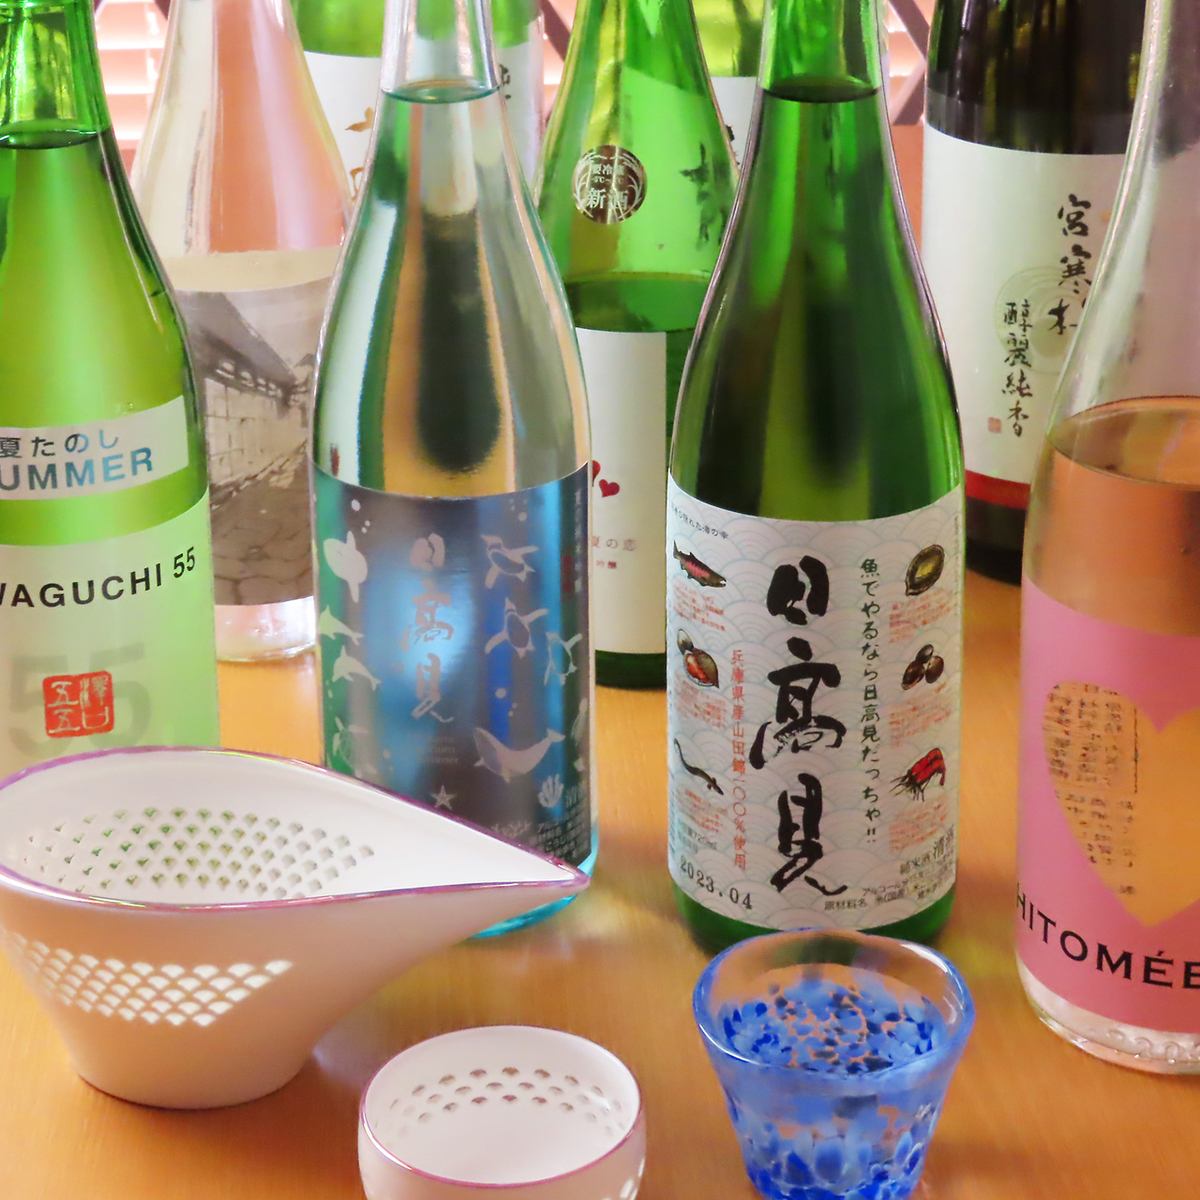 請與日本酒或燒酒一起享用我們的特色菜餚。